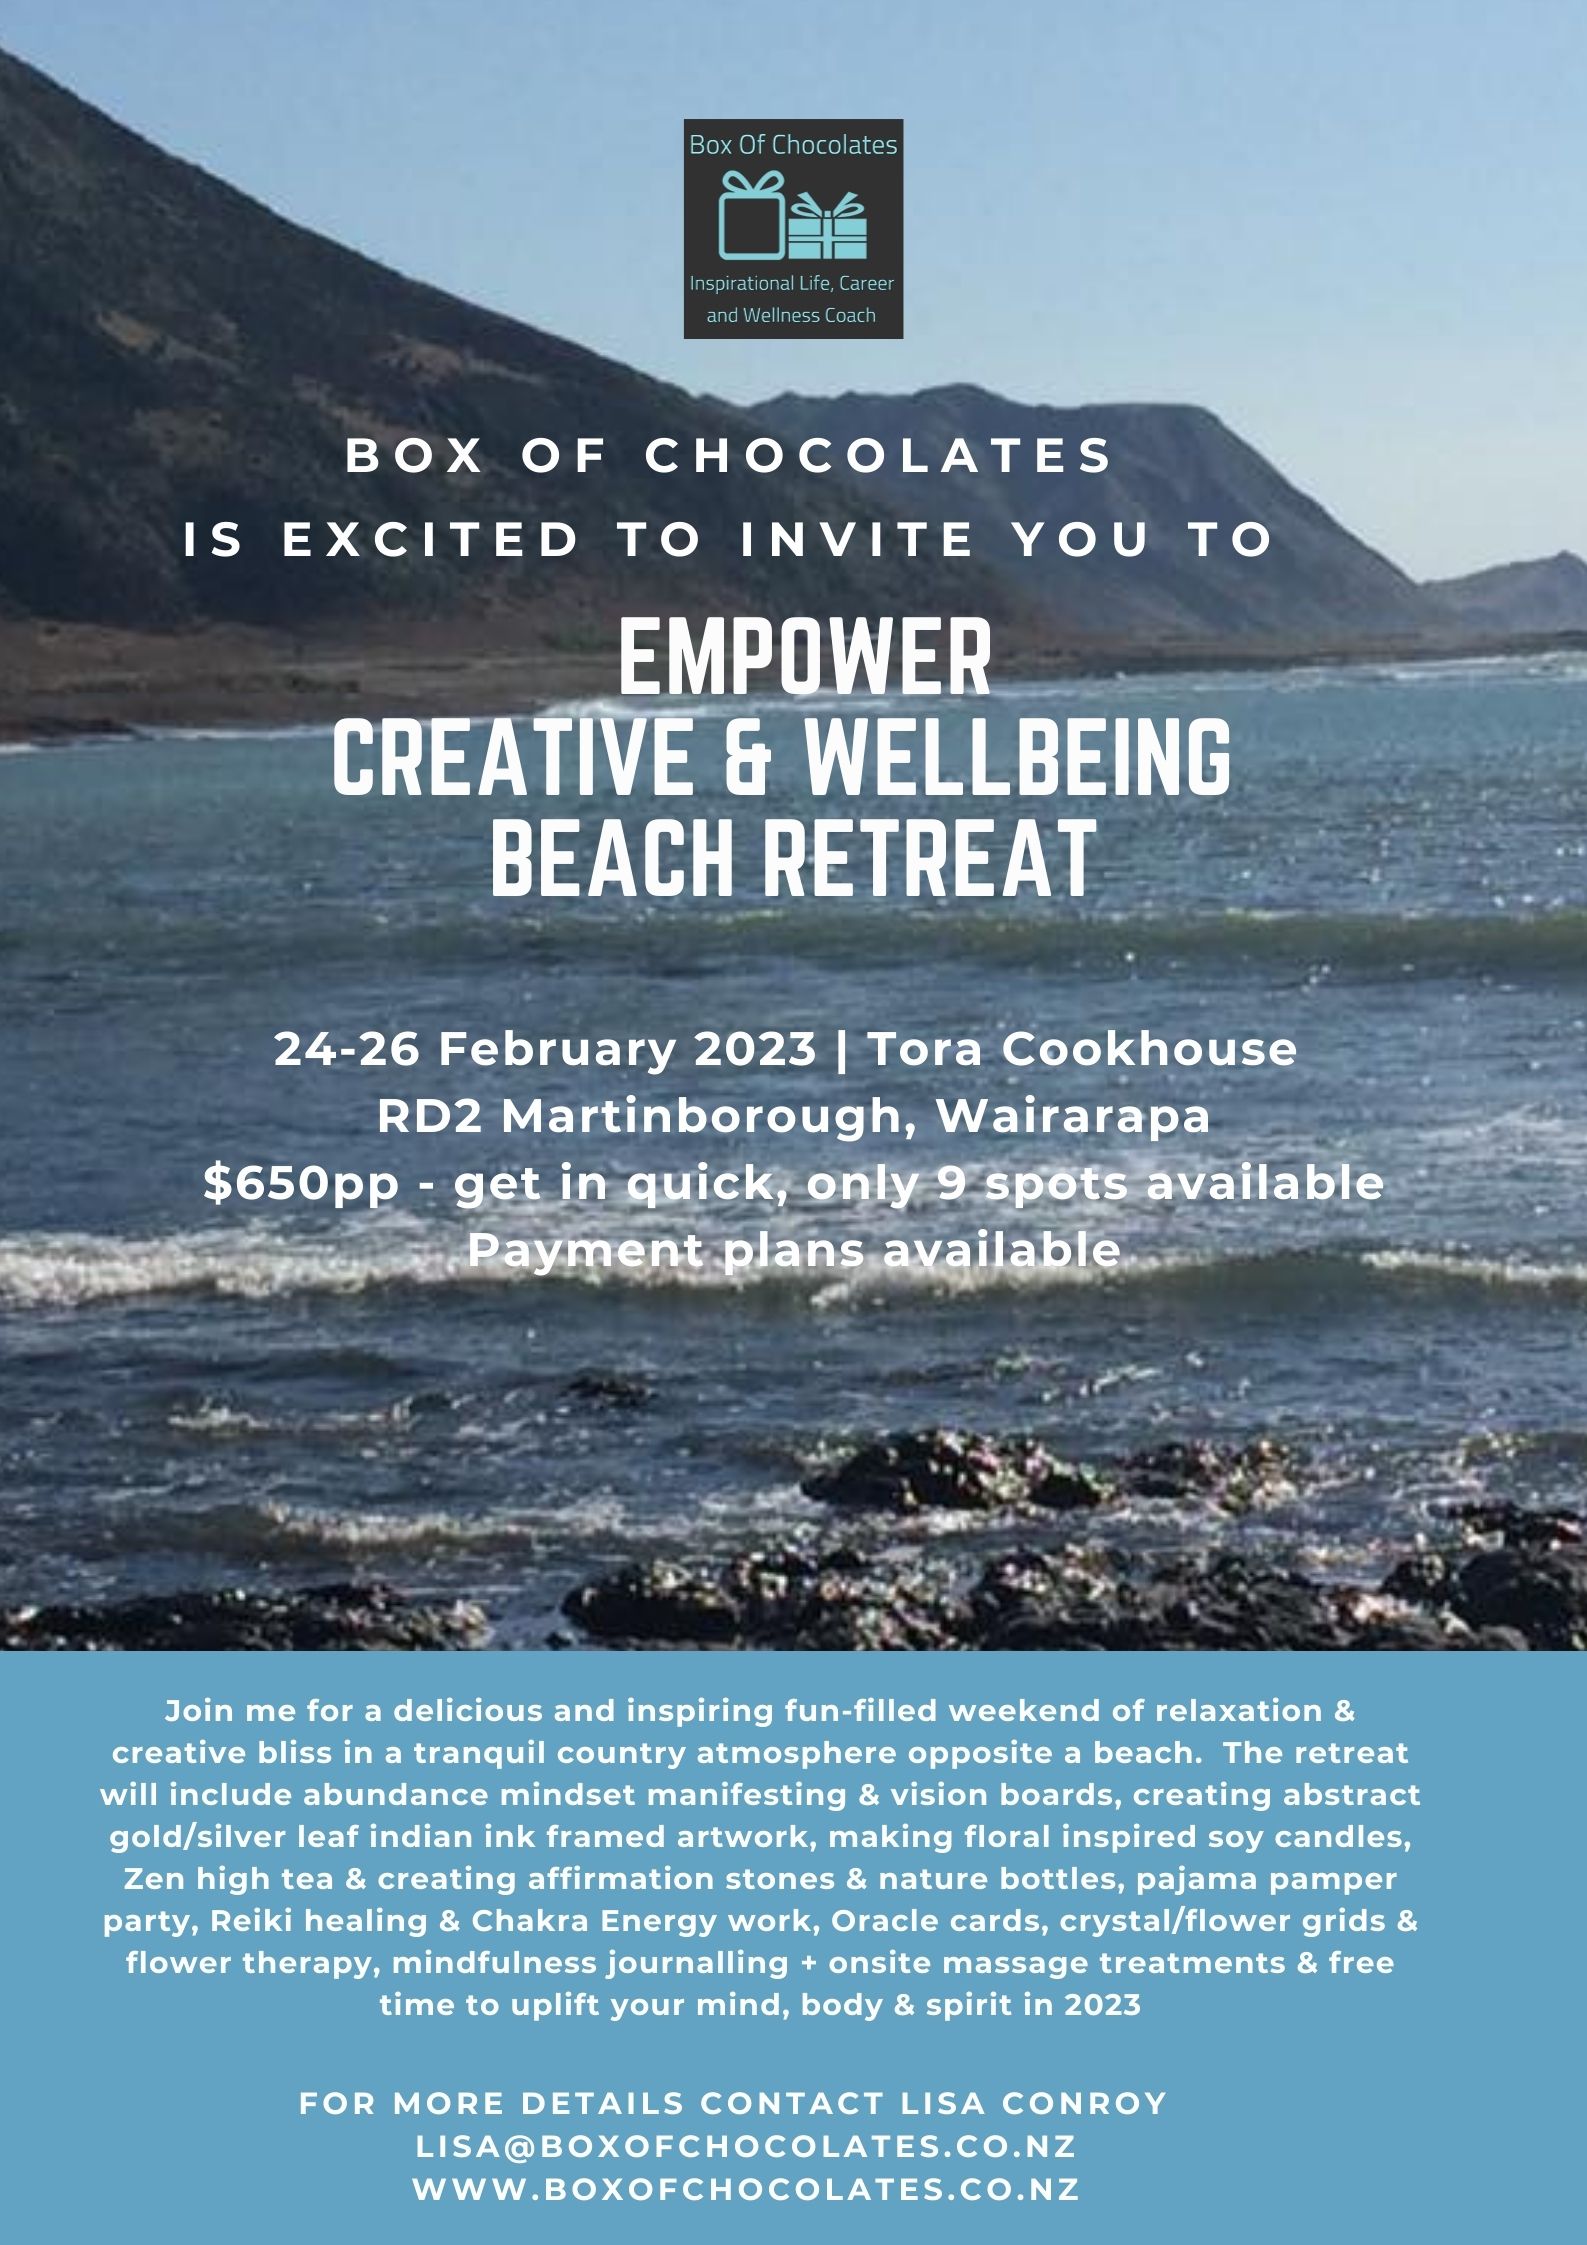 EMPOWER - Creative & Wellbeing Beach Retreat 2023